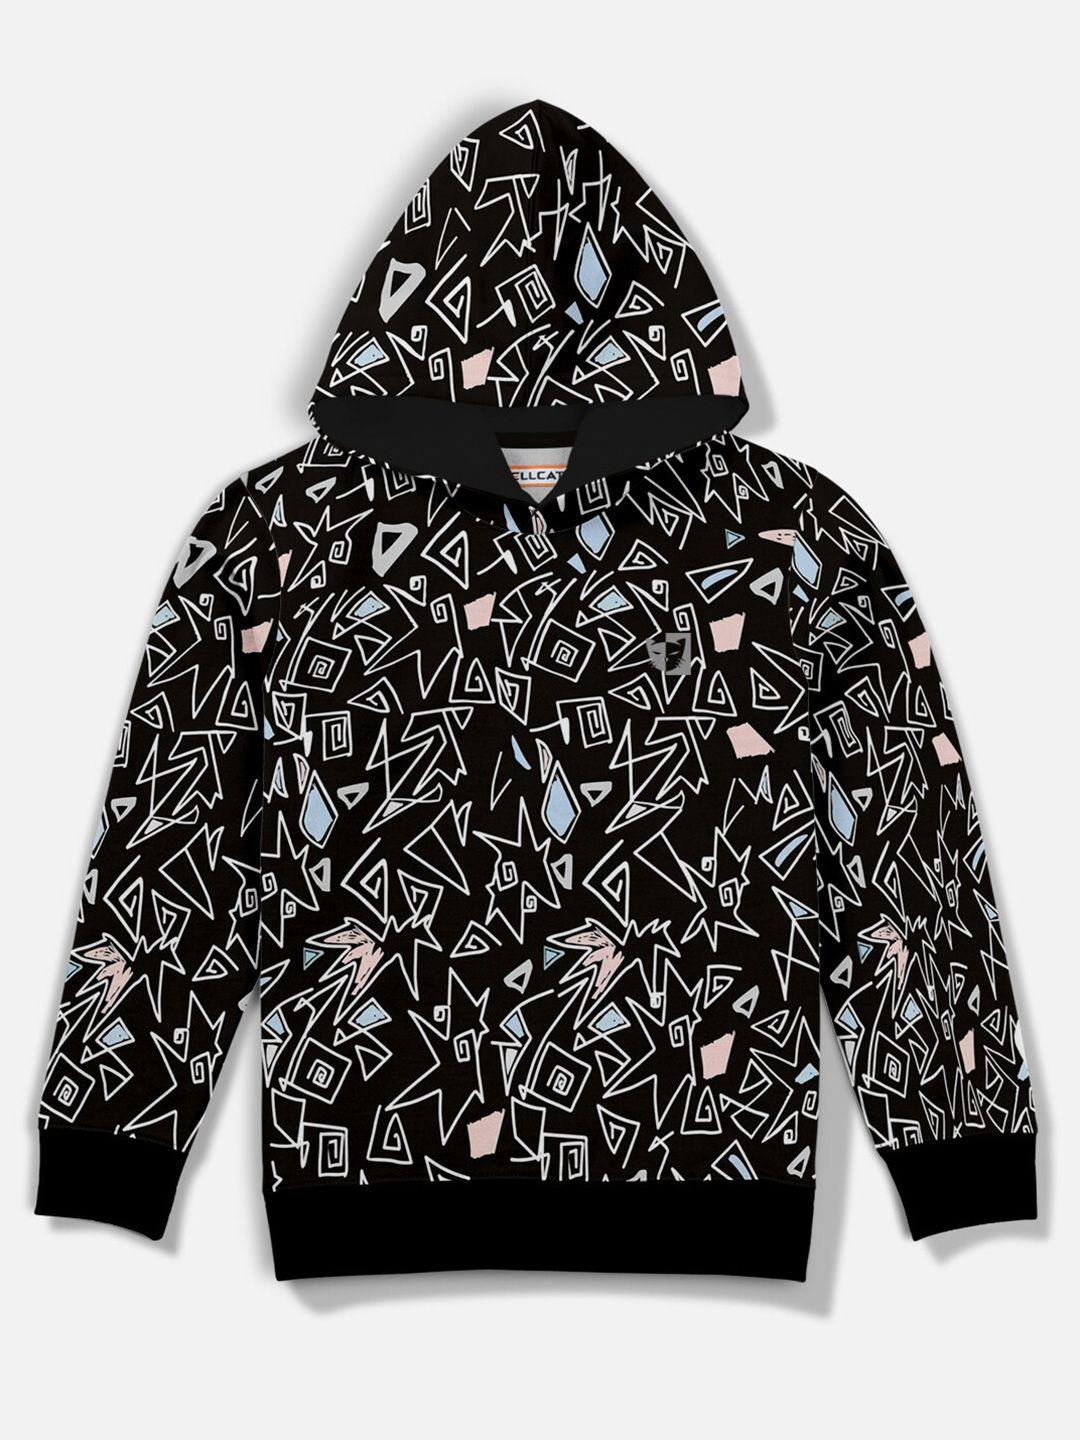 hellcat boys black printed hooded sweatshirt